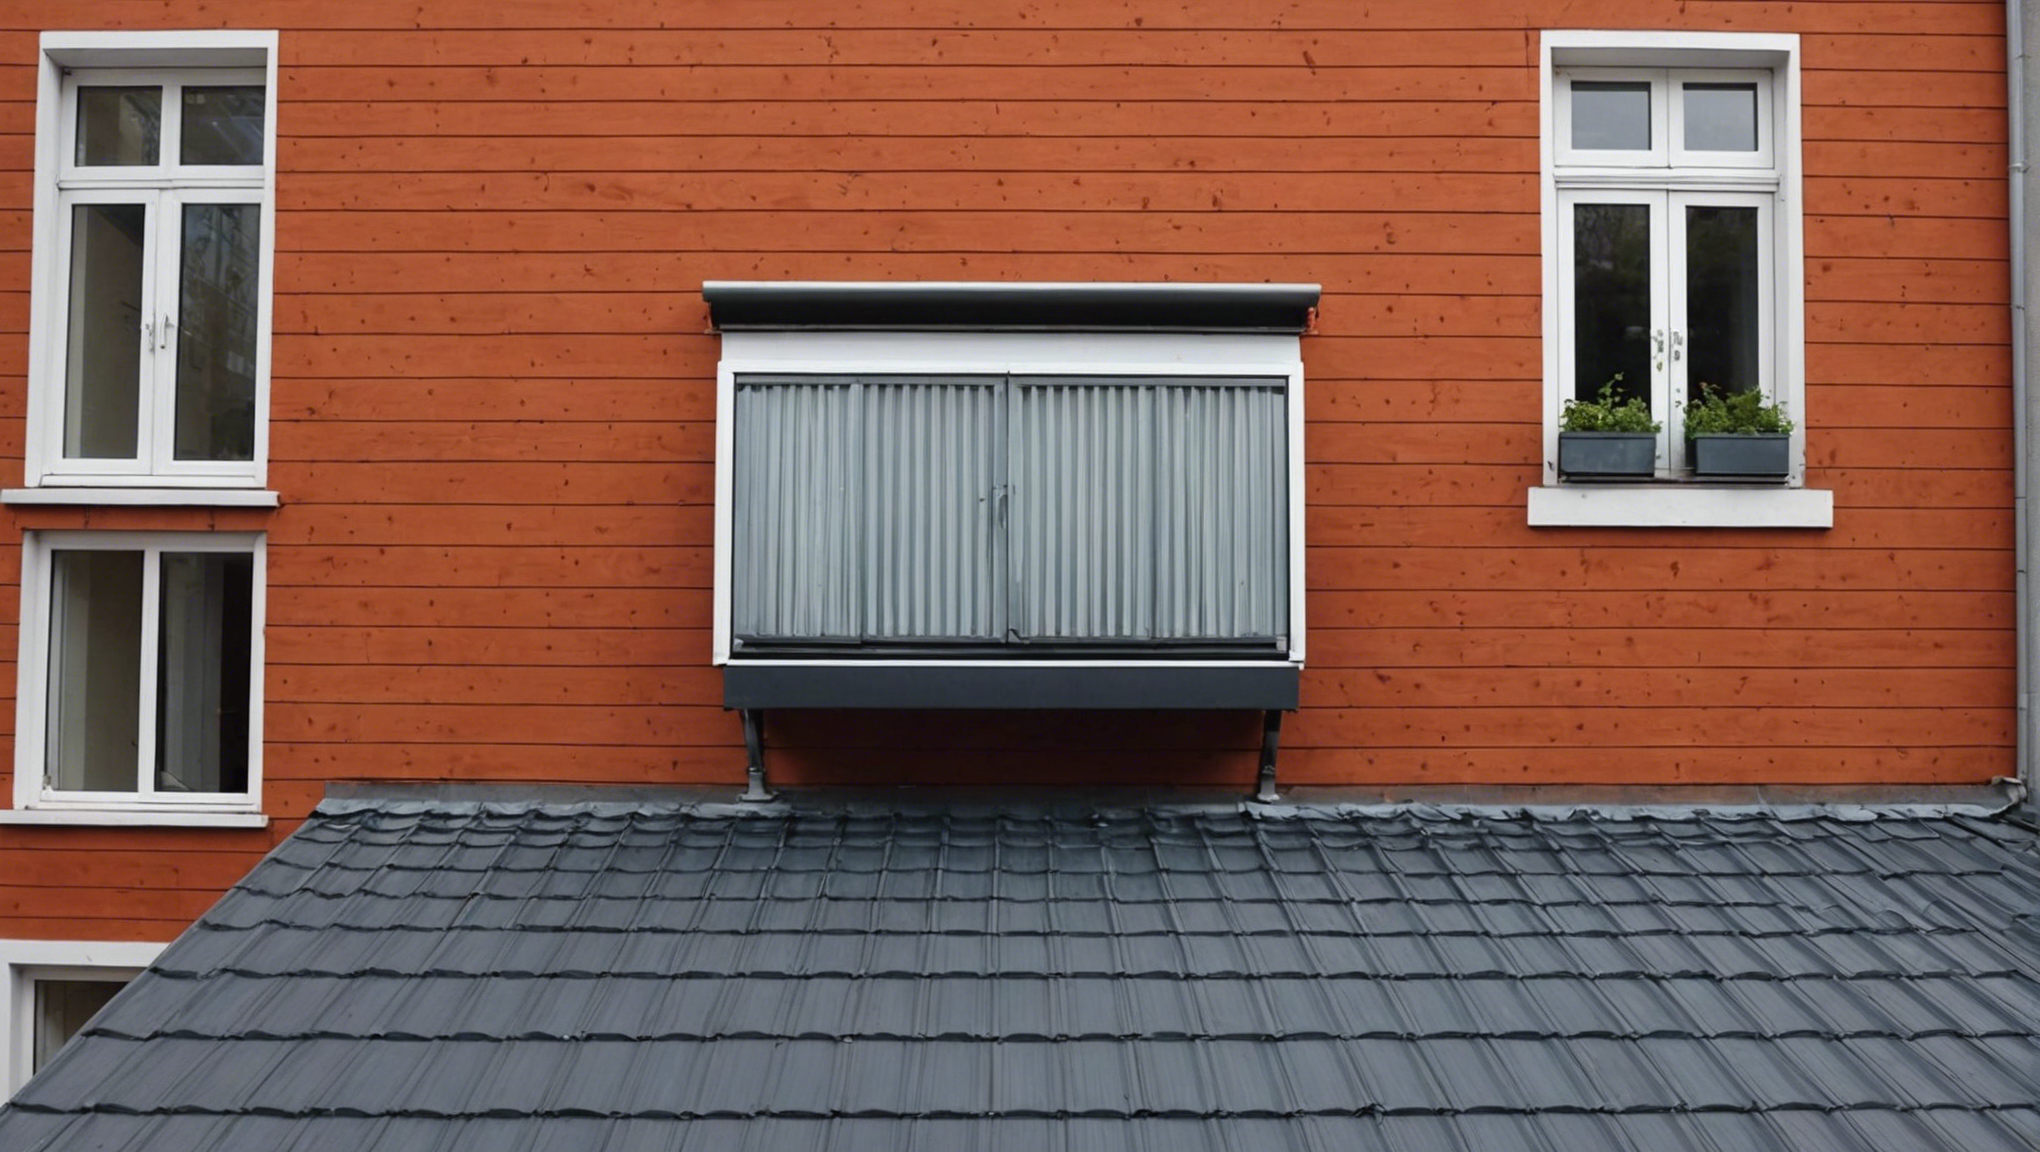 découvrez comment isoler efficacement votre toiture en france avec les solutions paroc pour un confort thermique optimal et des économies d'énergie.